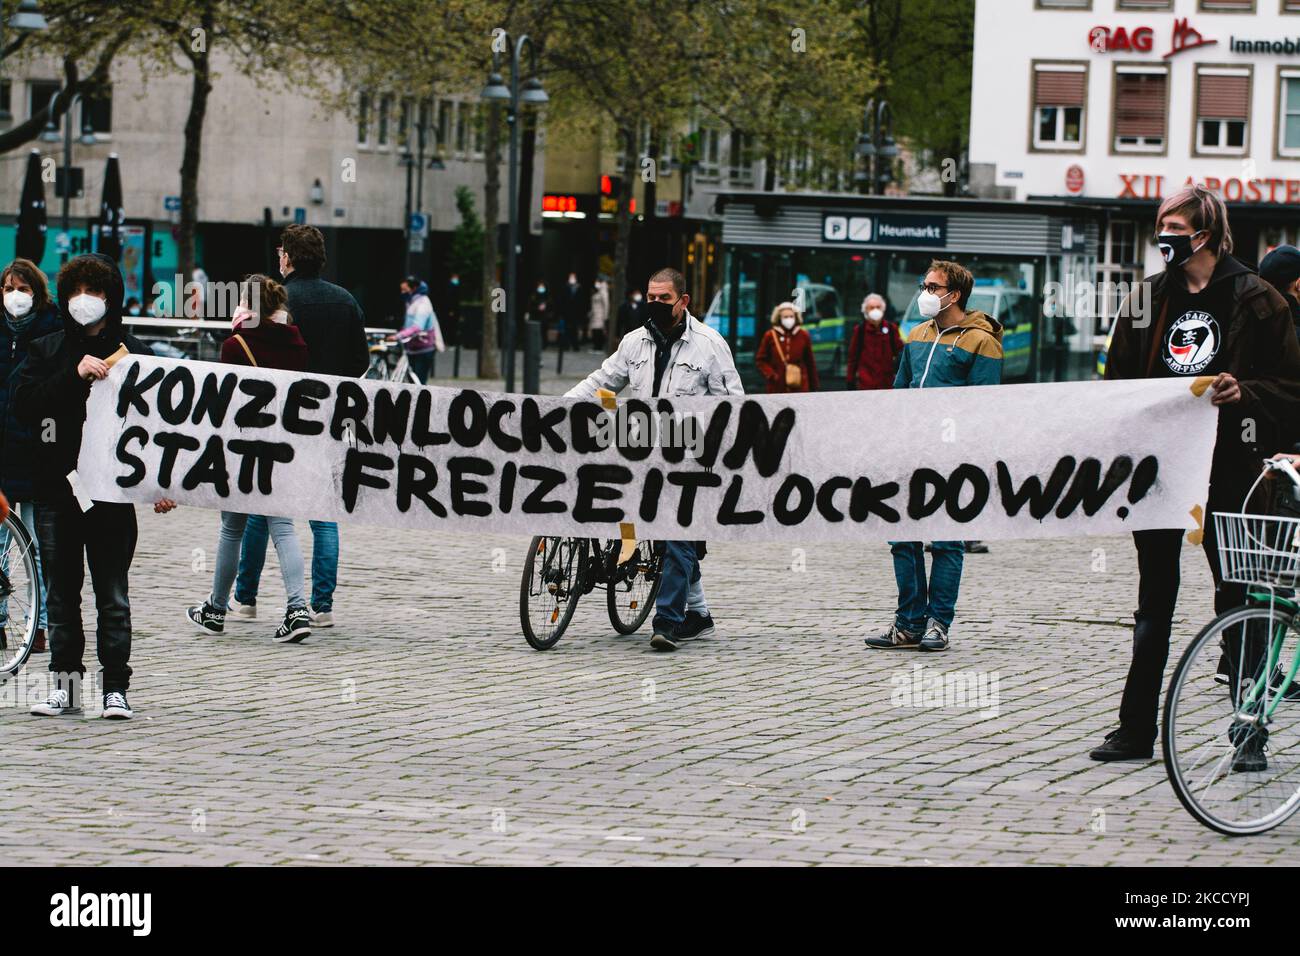 El estandarte de 'Bloqueo de Corperación en lugar de bloqueo de libertad' se ve durante la protesta contra el toque de queda para frenar la propagación del coronavirus en Colonia, Alemania, el 17 de abril de 2021 (Foto de Ying Tang/NurPhoto) Foto de stock